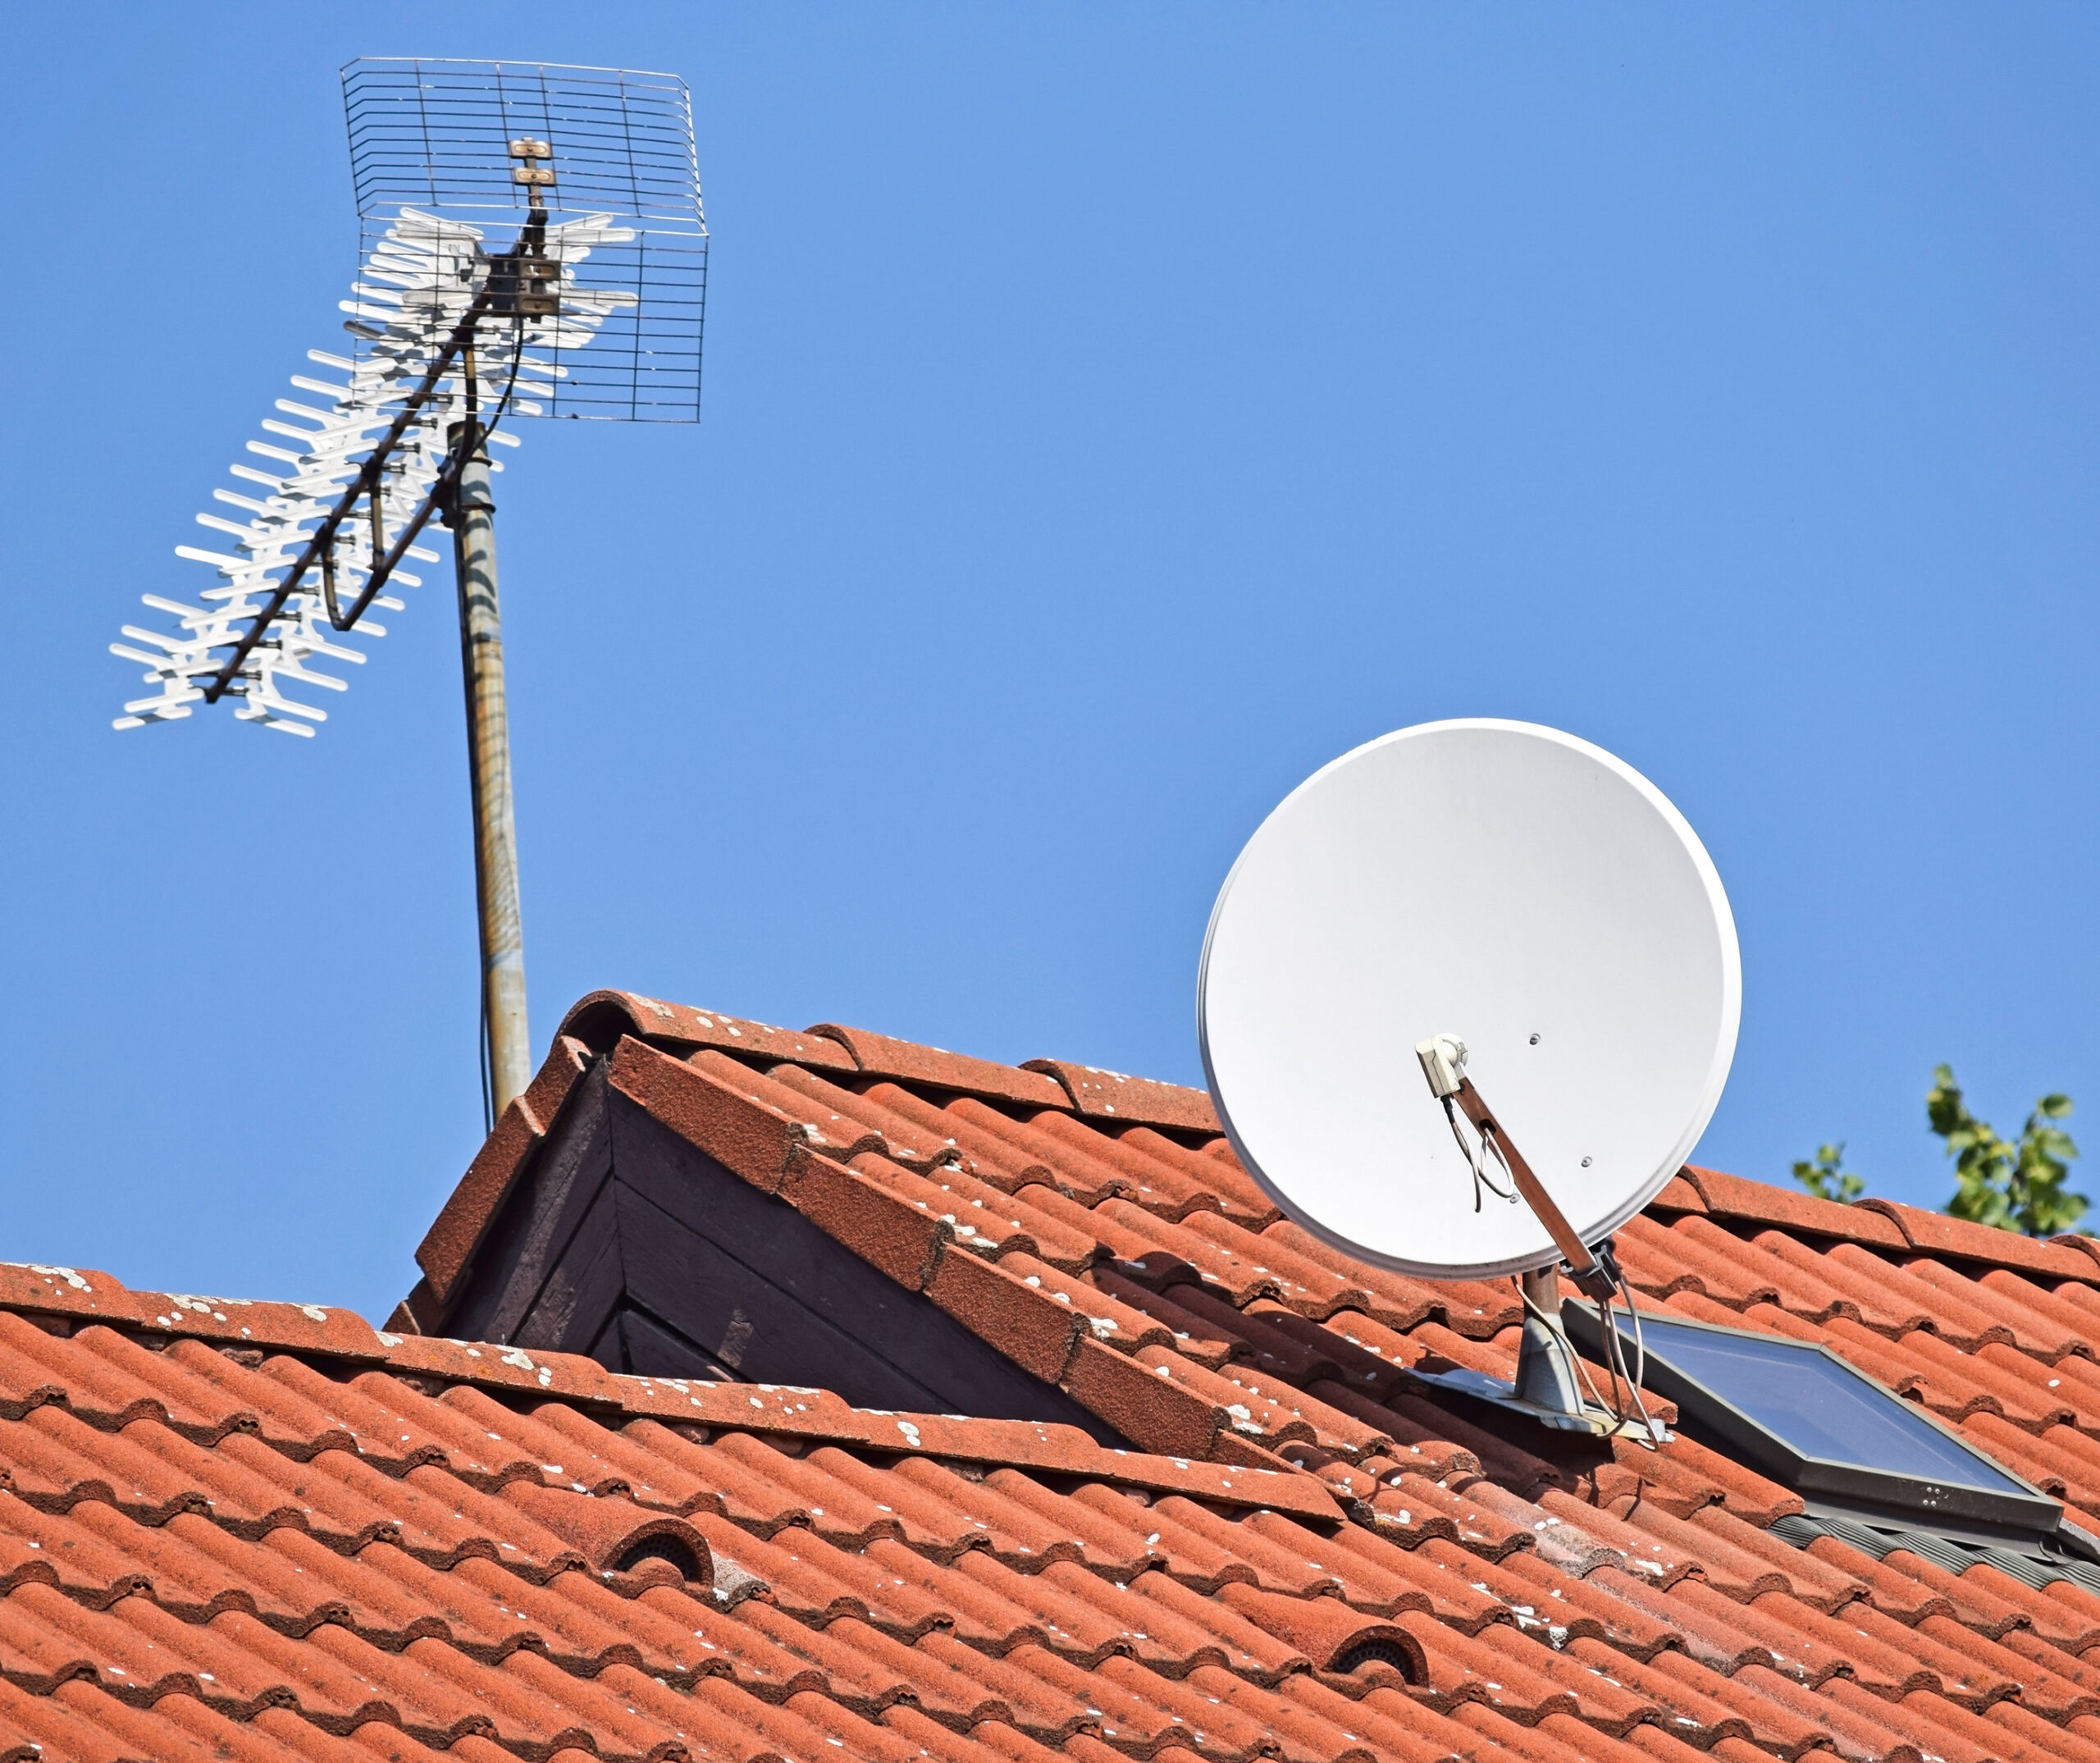 Antenas parabólicas utilizadas no setor telecomunicações em telhado de casa